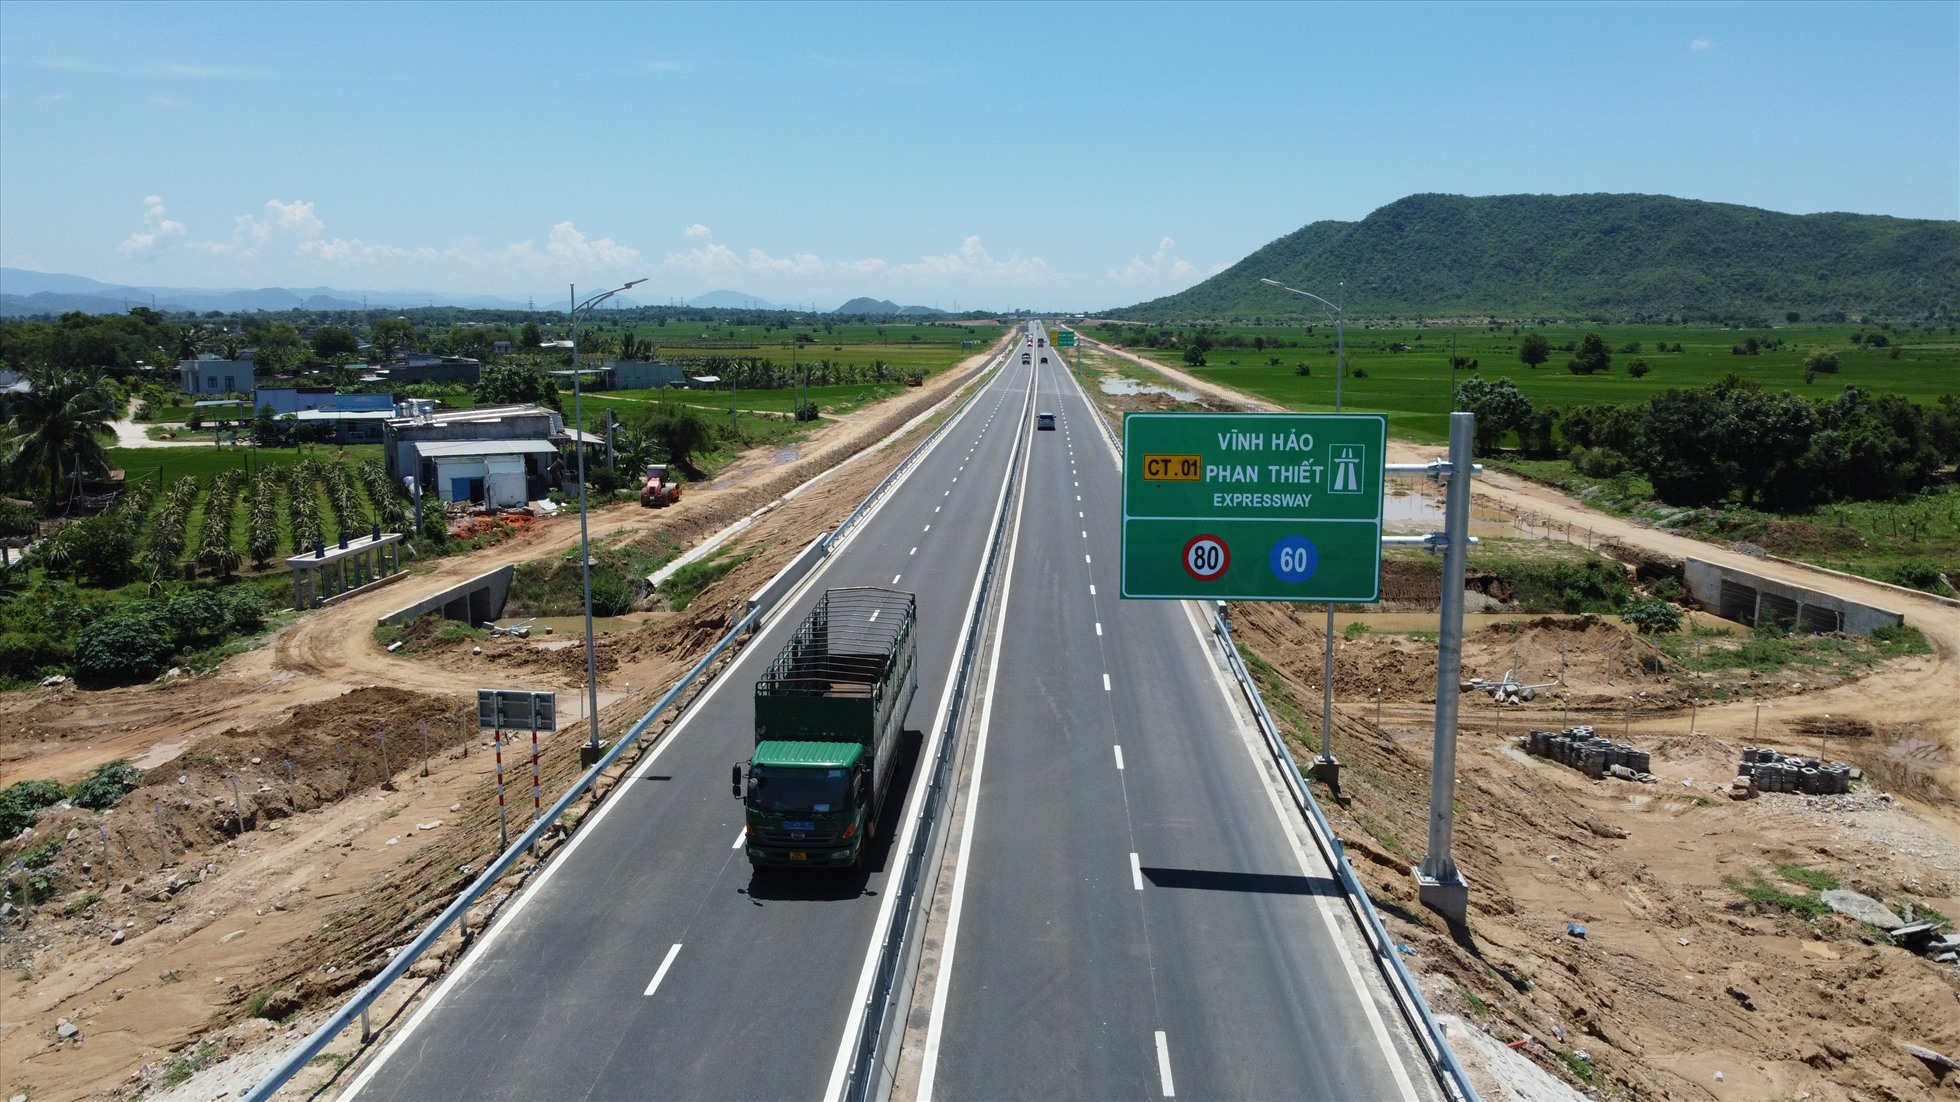 Khởi công tháng 9.2020, cao tốc Vĩnh Hảo - Phan Thiết có chiều dài 100,8 km, toàn tuyến đi qua tỉnh Bình Thuận. Đến ngày 19.5, cao tốc này được đưa vào vận hành, khai thác tuyến chính. Giai đoạn phân kì hiện nay với quy mô 4 làn xe, vận tốc thiết kế 80 km/h.